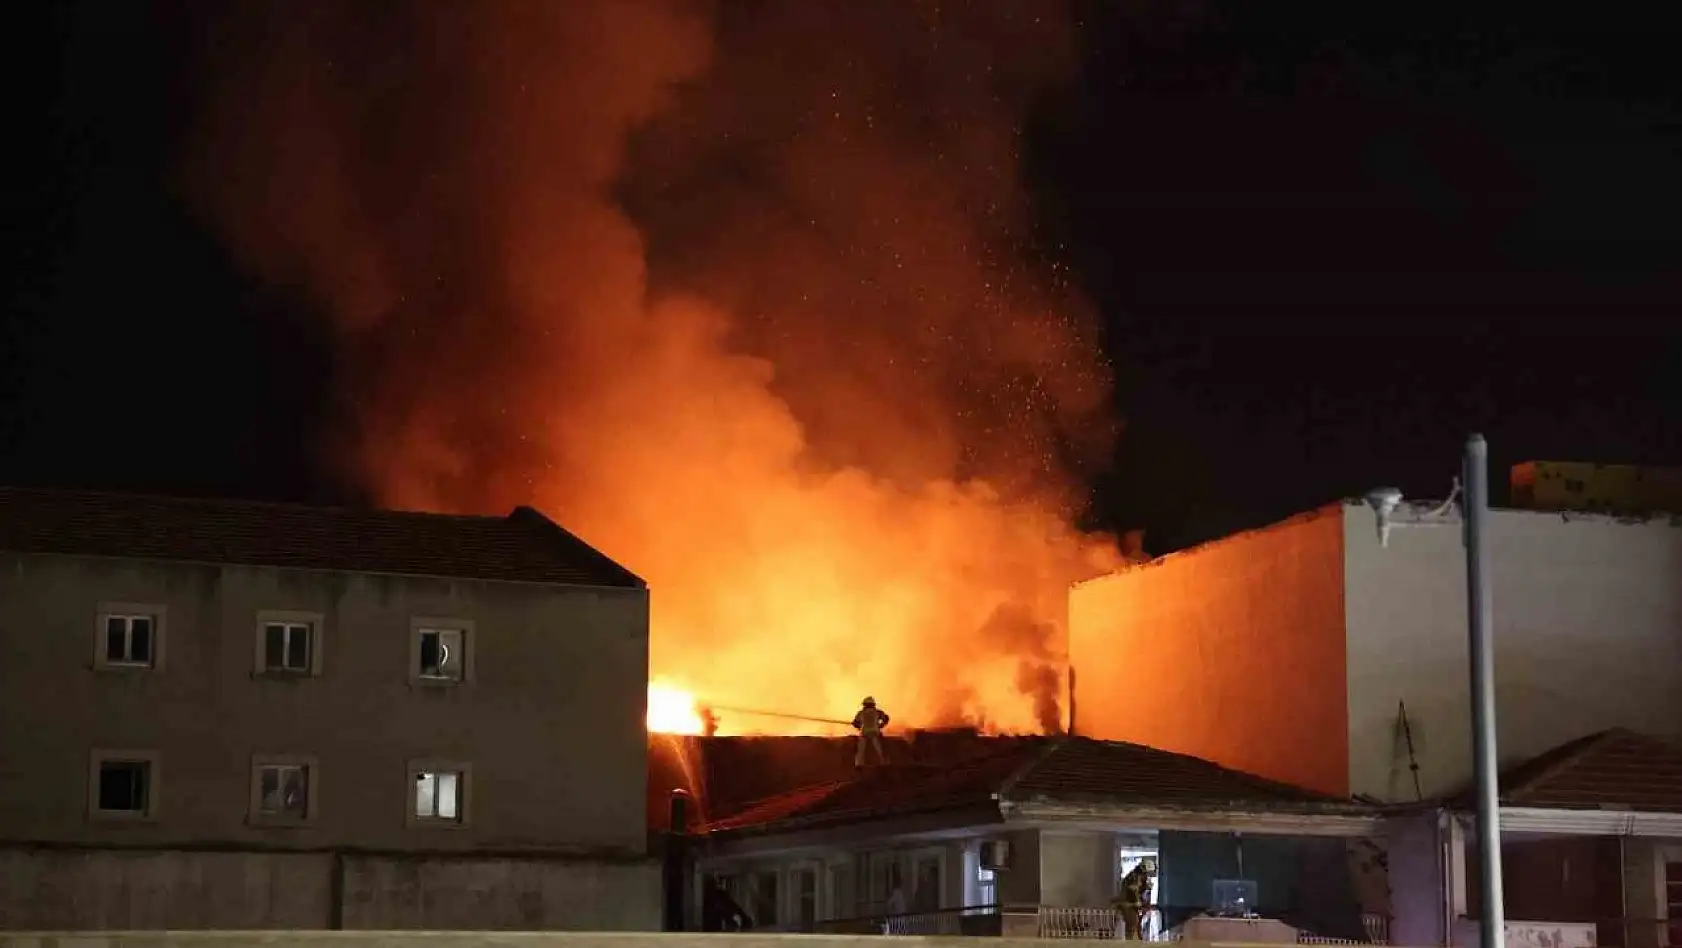 İzmir'de Tarihi Kemeraltı Çarşısı'nda yangın: Tekstil deposu alevlere teslim oldu